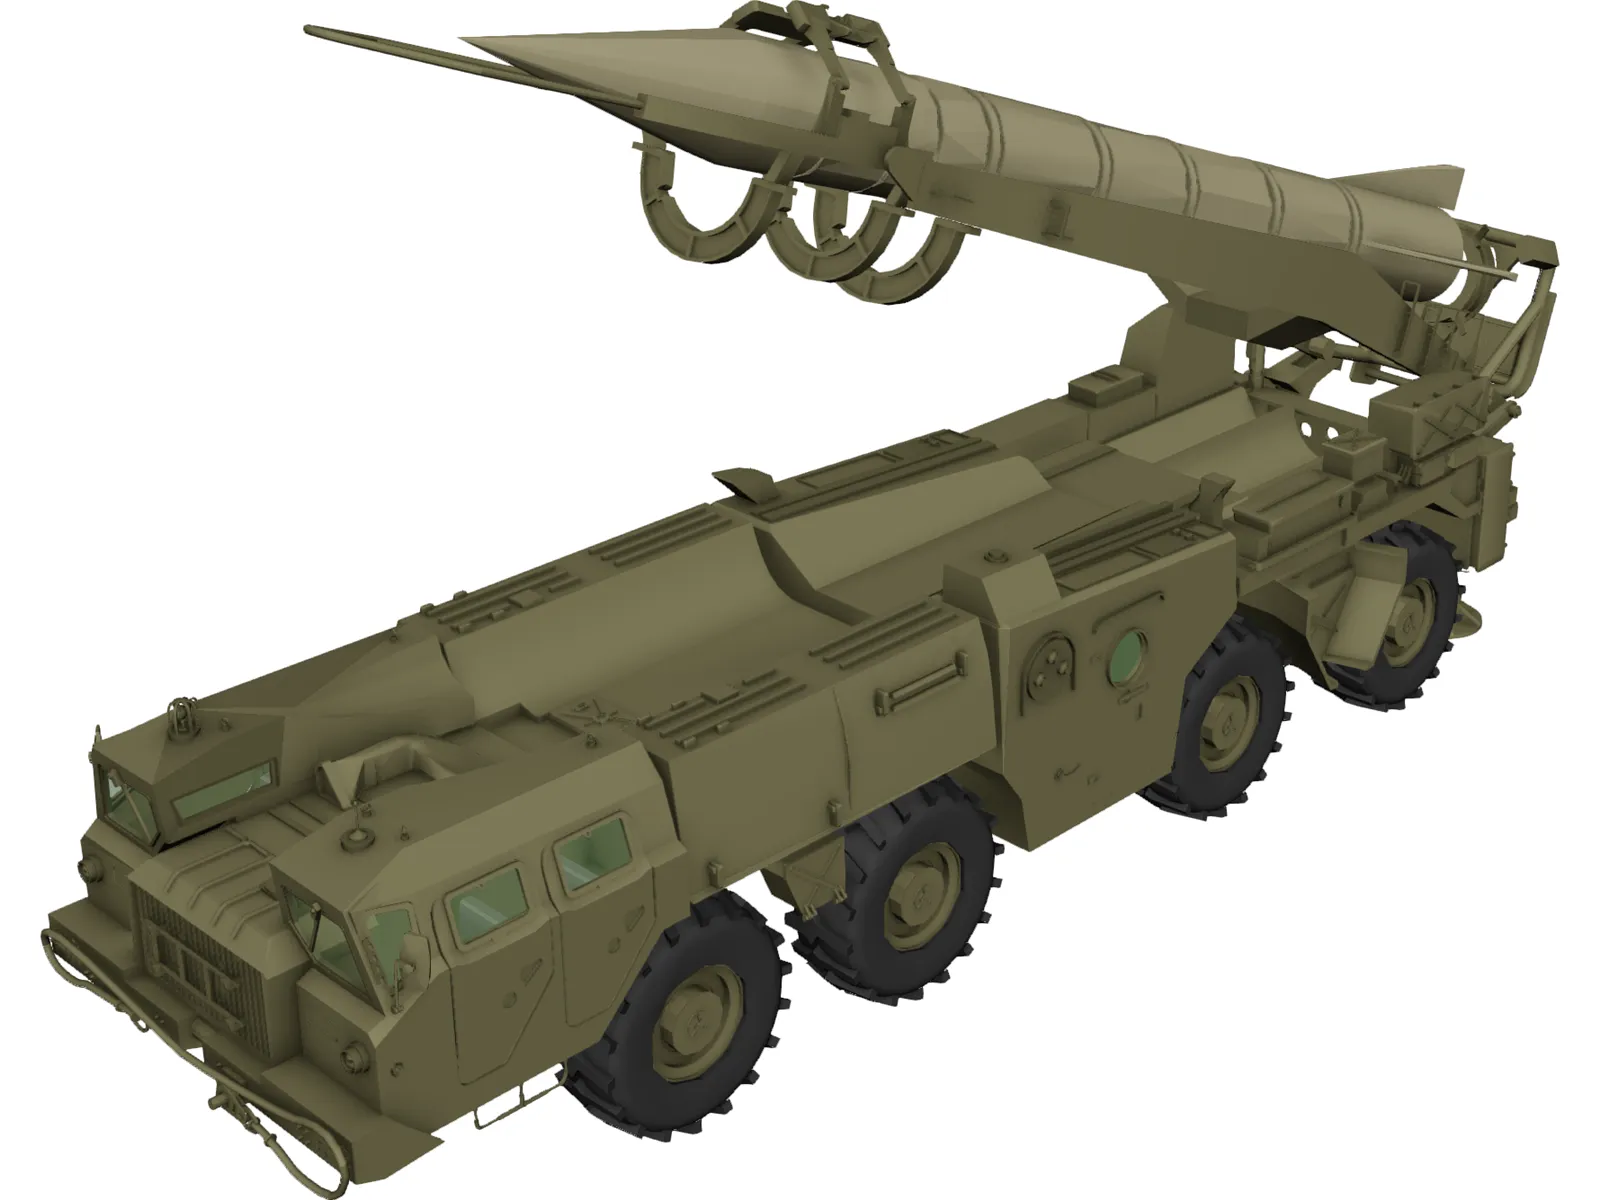 Scud B Missile Launcher 3D Model